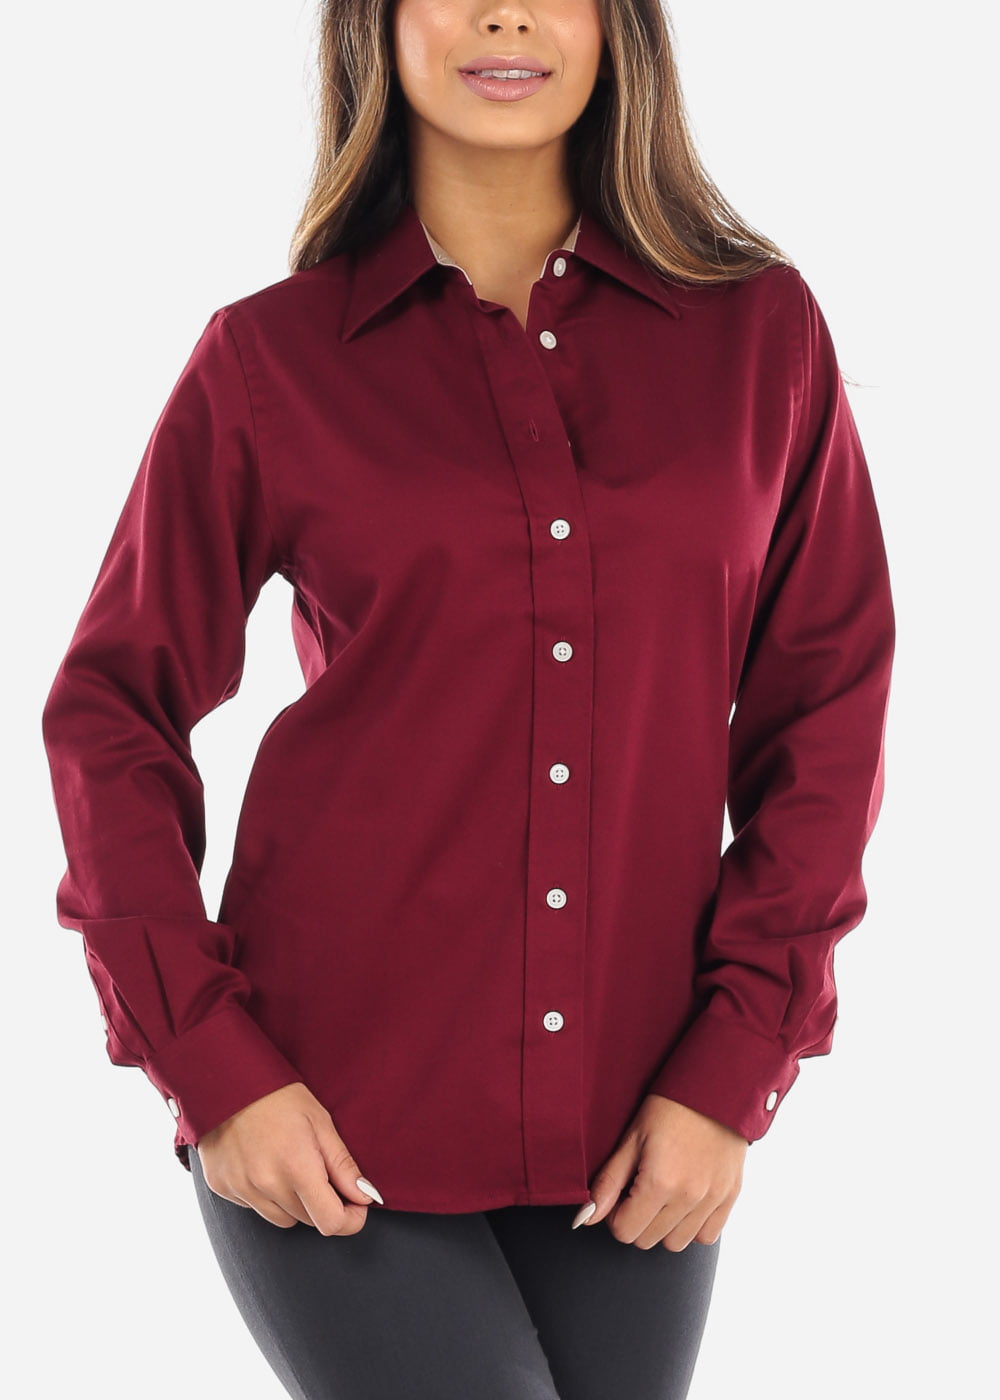 burgundy shirt womens